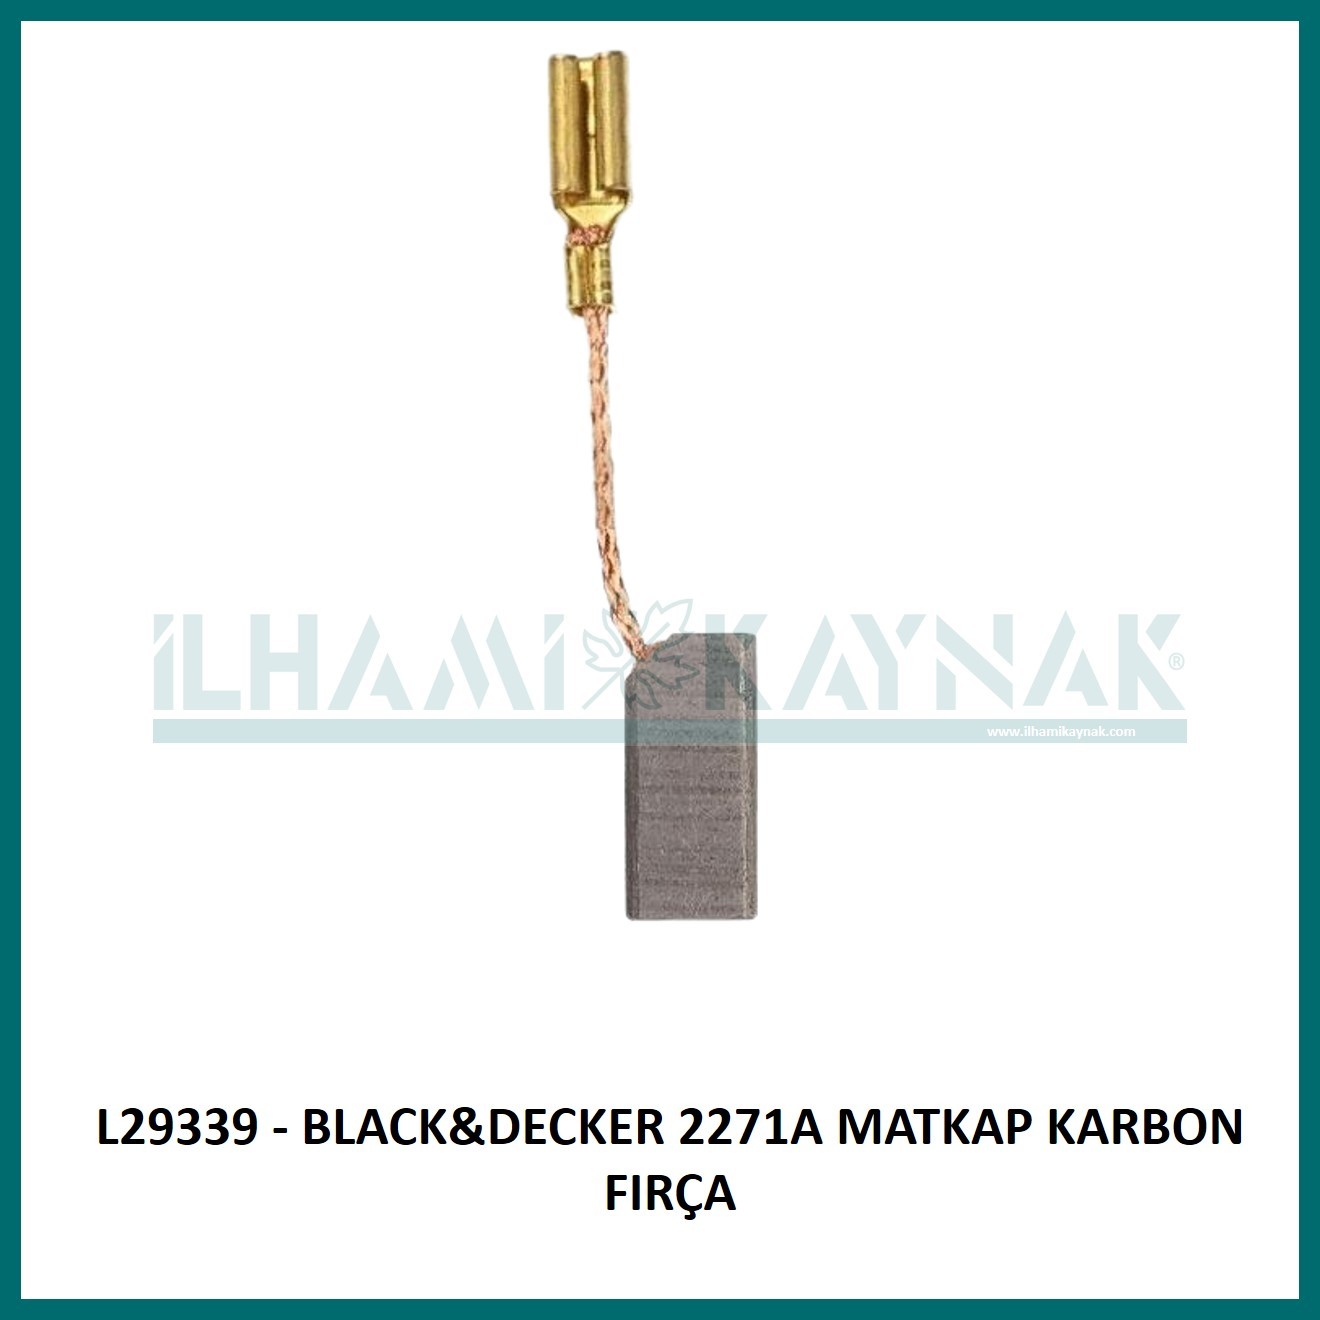 L29339 - BLACK&DECKER 2271A MATKAP KARBON FIRÇA - 6.3*6.3*13 mm - Minimum Satın Alım: 10 Adet